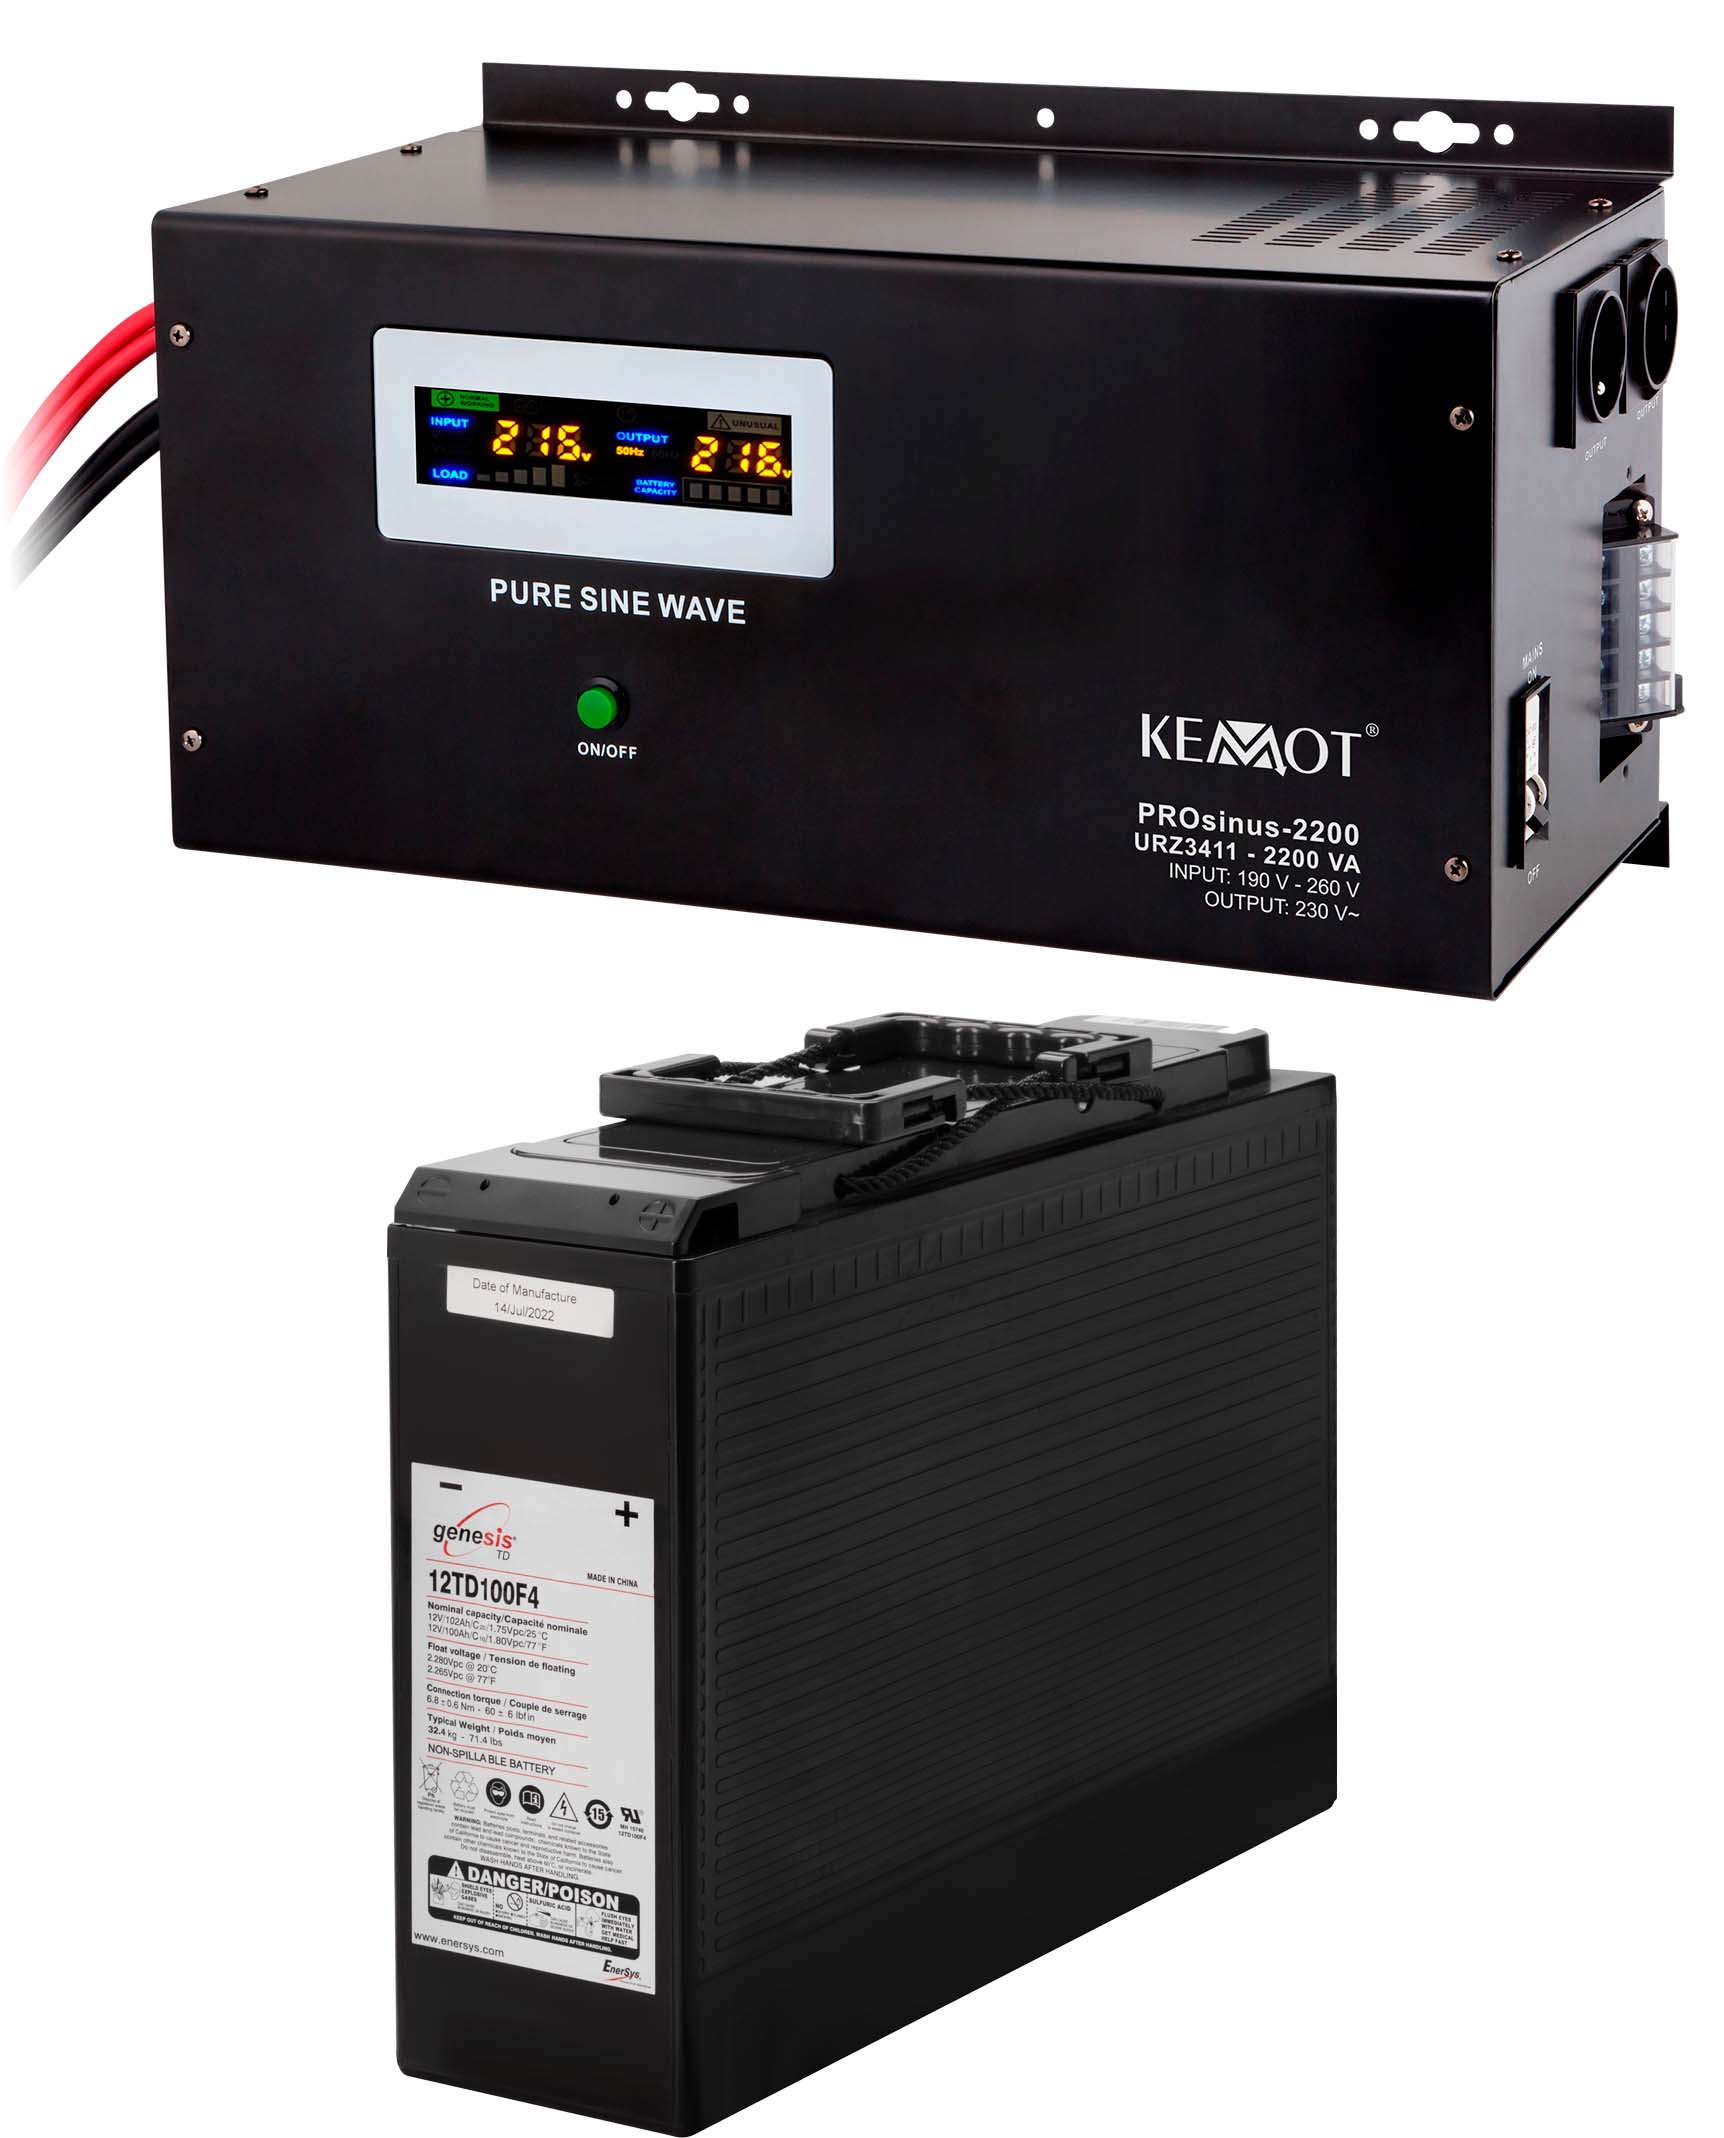 Источник бесперебойного питания Kemot PROSinus-2200 (URZ3411)+аккумулятор Genesis 12TD100F4 (12V100Ah) в интернет-магазине, главное фото